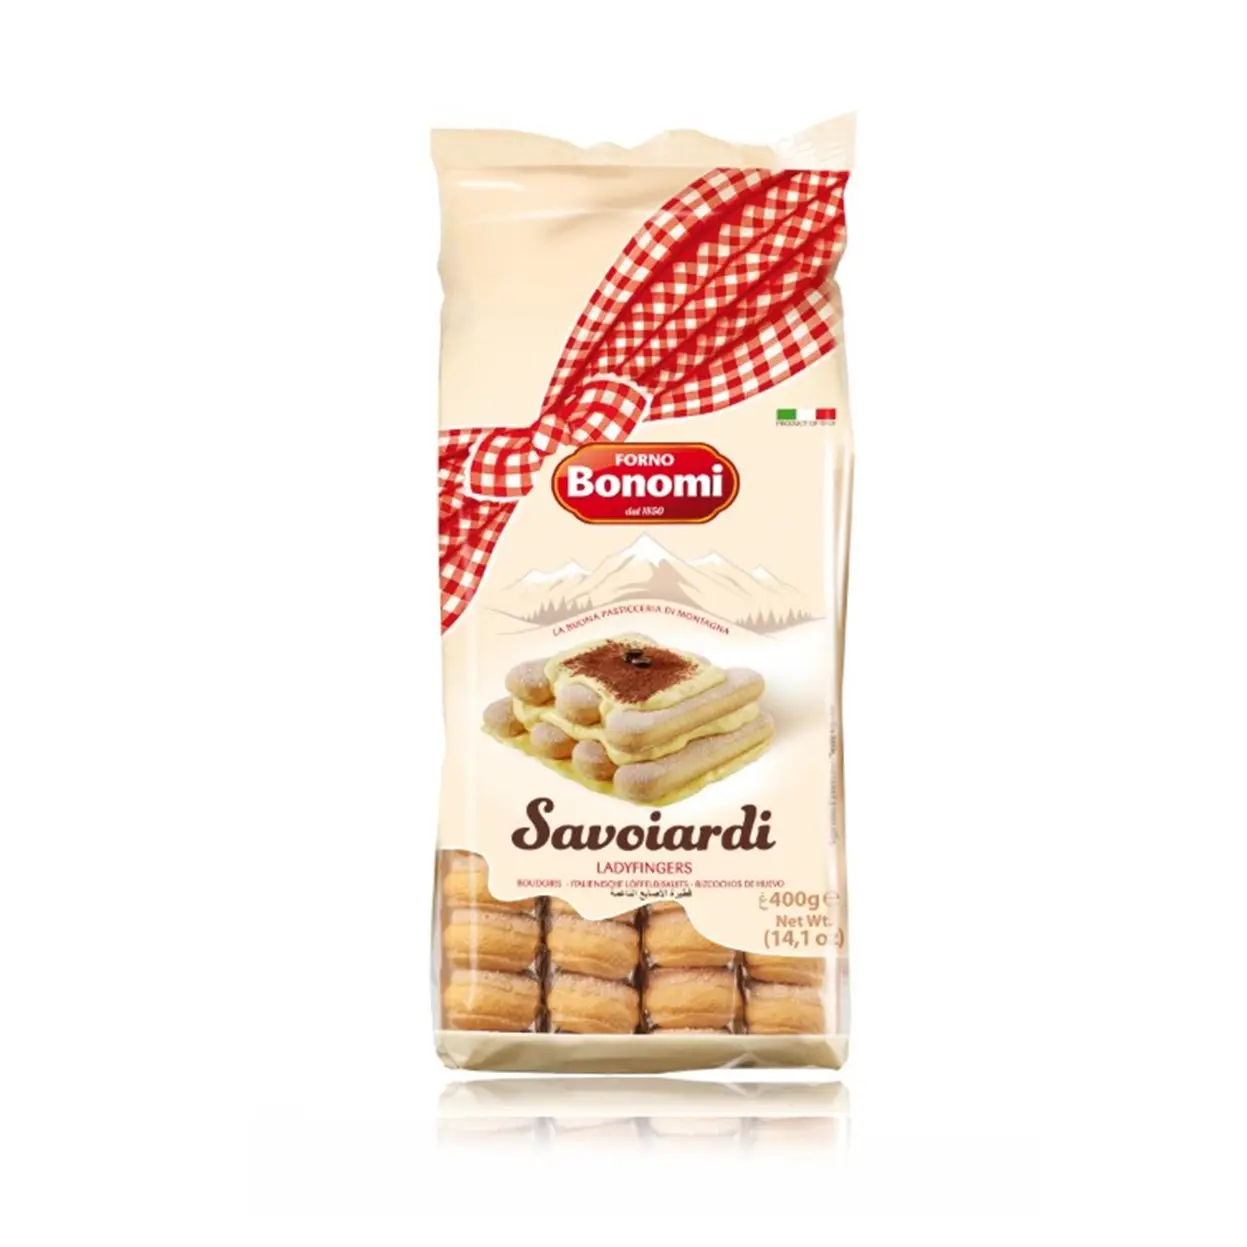 Савоярди купить в москве. Печенье савоярди 400 г. Bonomi. Печенье cавоярди "forno Bonomi" (400 гр). Печенье сахарное forno Bonomi савоярди 200г. Печенье "forno Bonomi" сахарное савоярди 400гр.